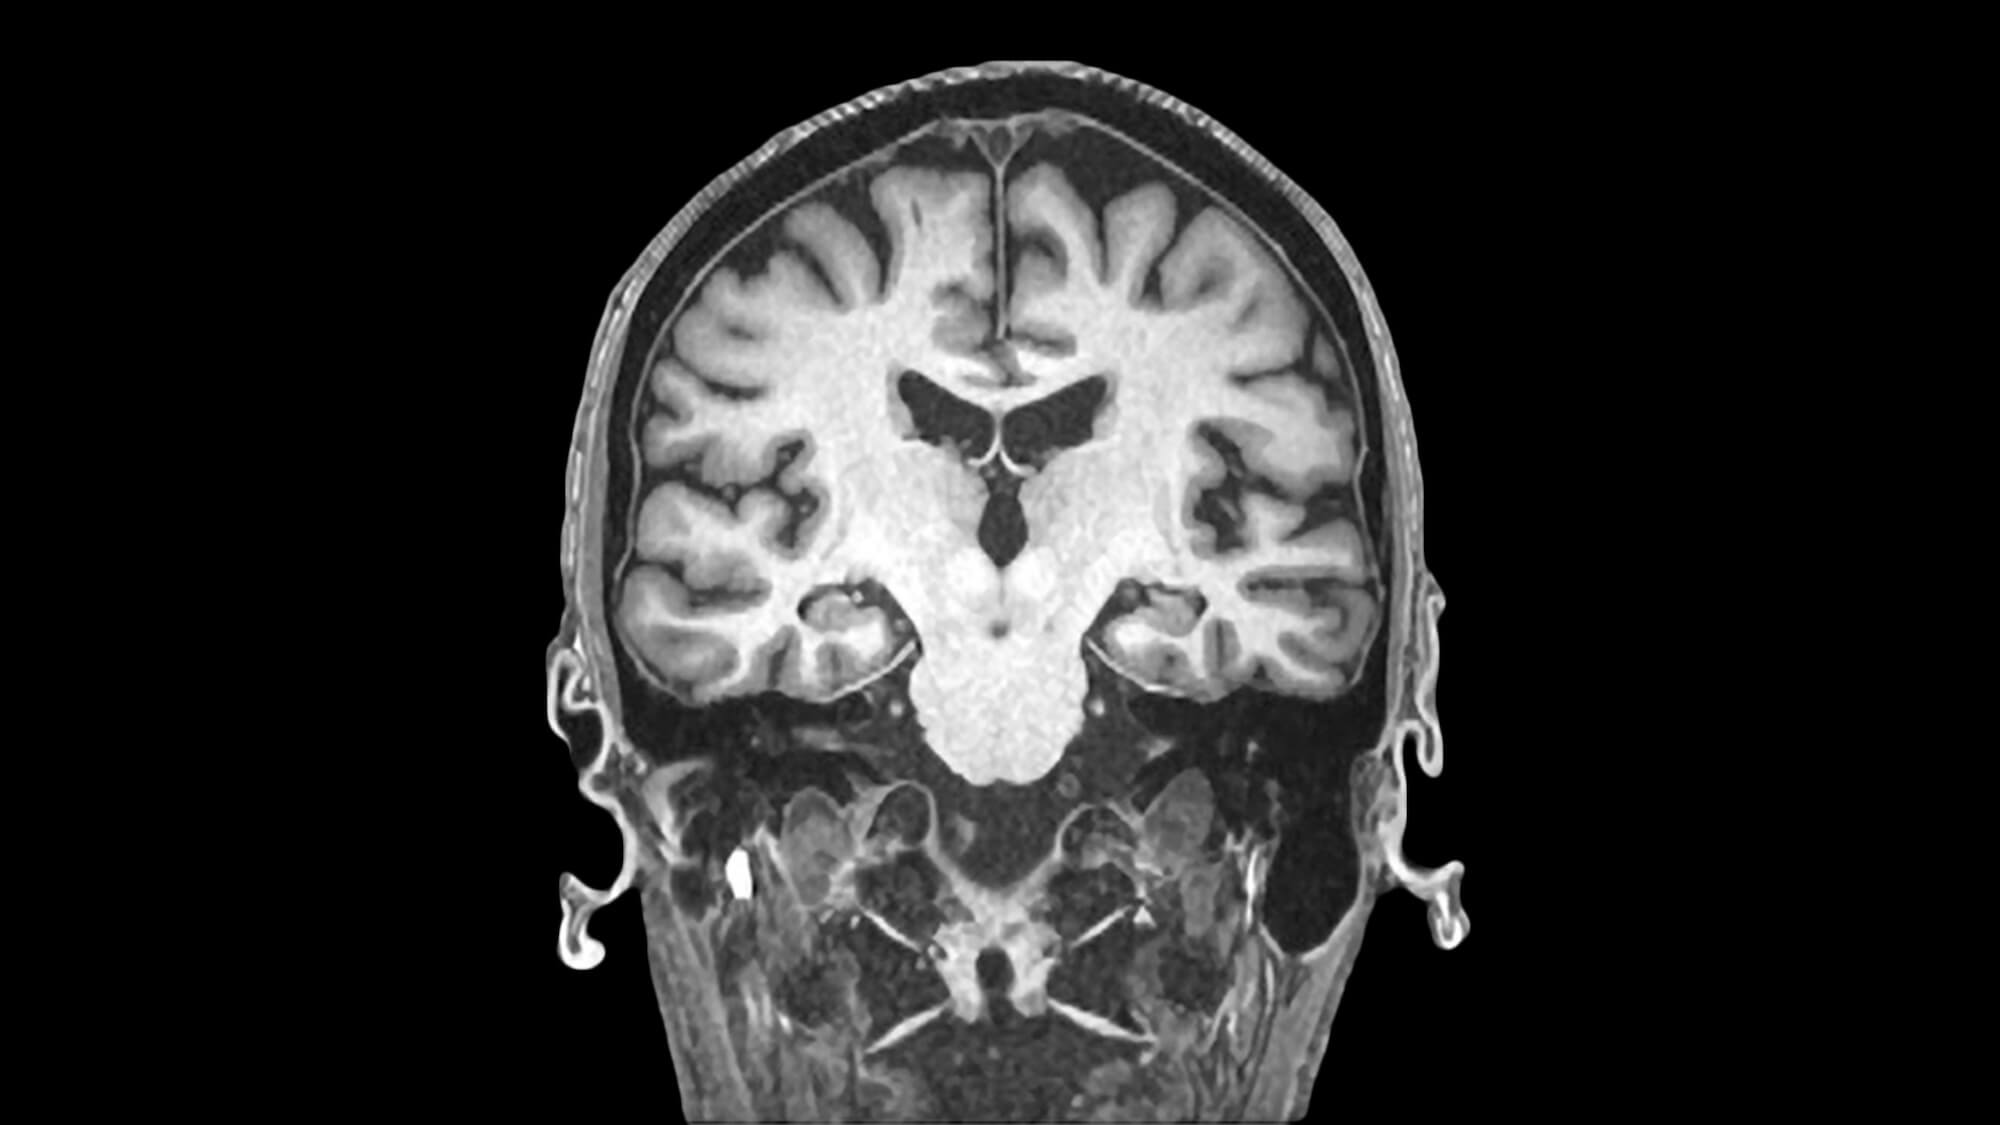 Image of human skull taken via MRI